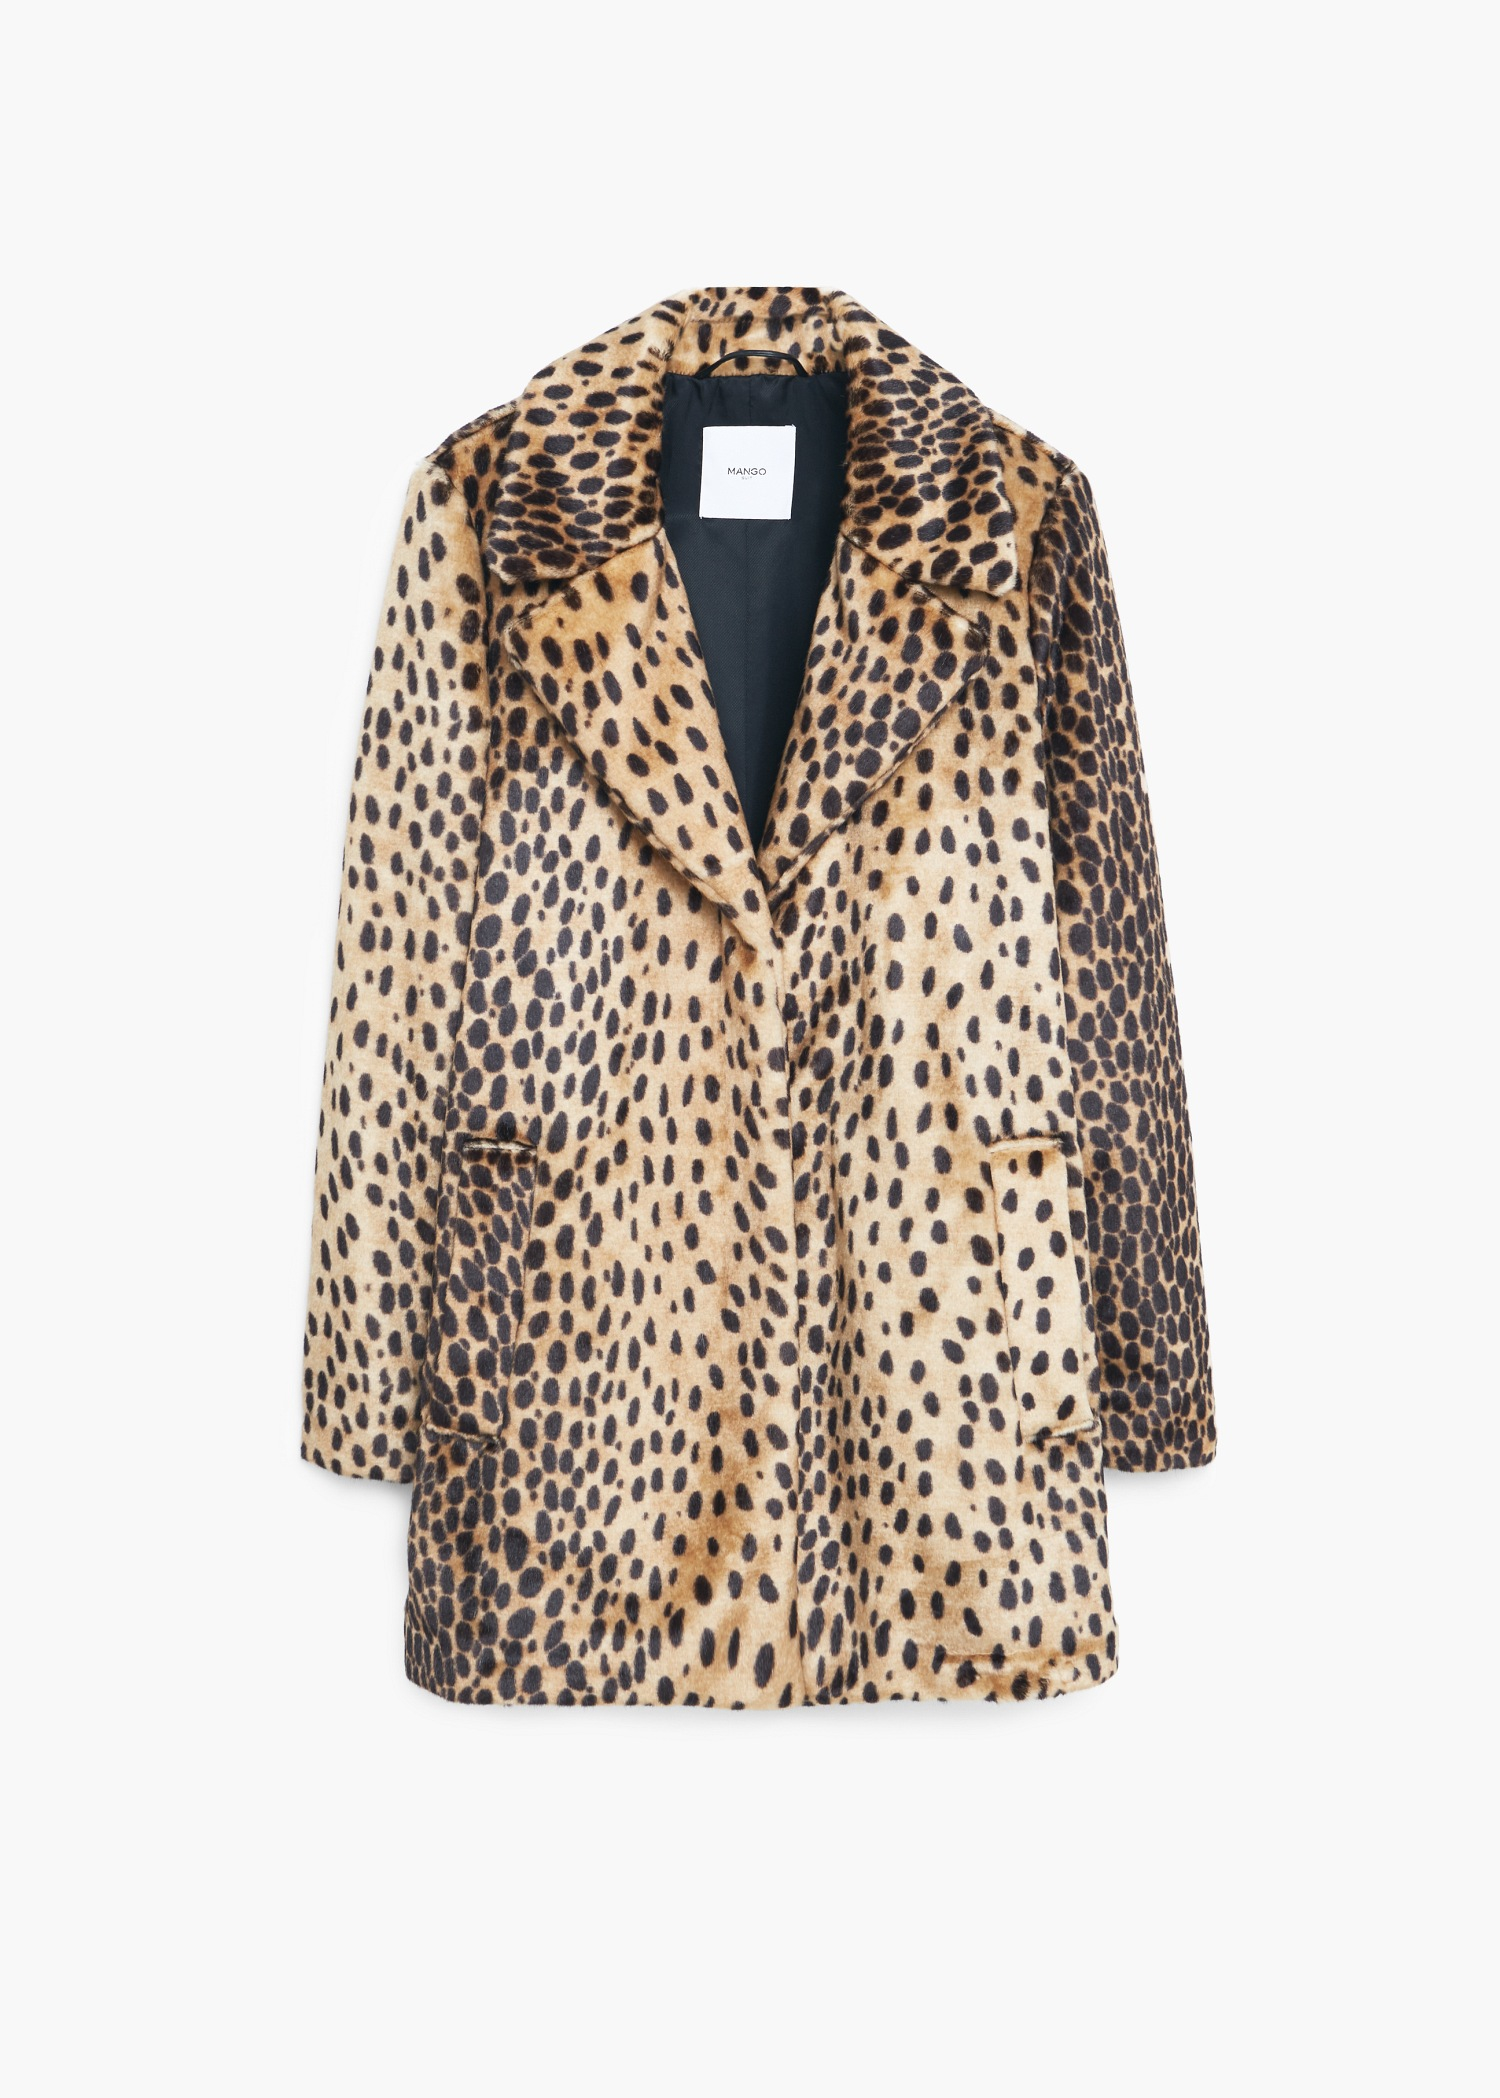 Lyst - Mango Leopard Faux Fur Coat in Brown